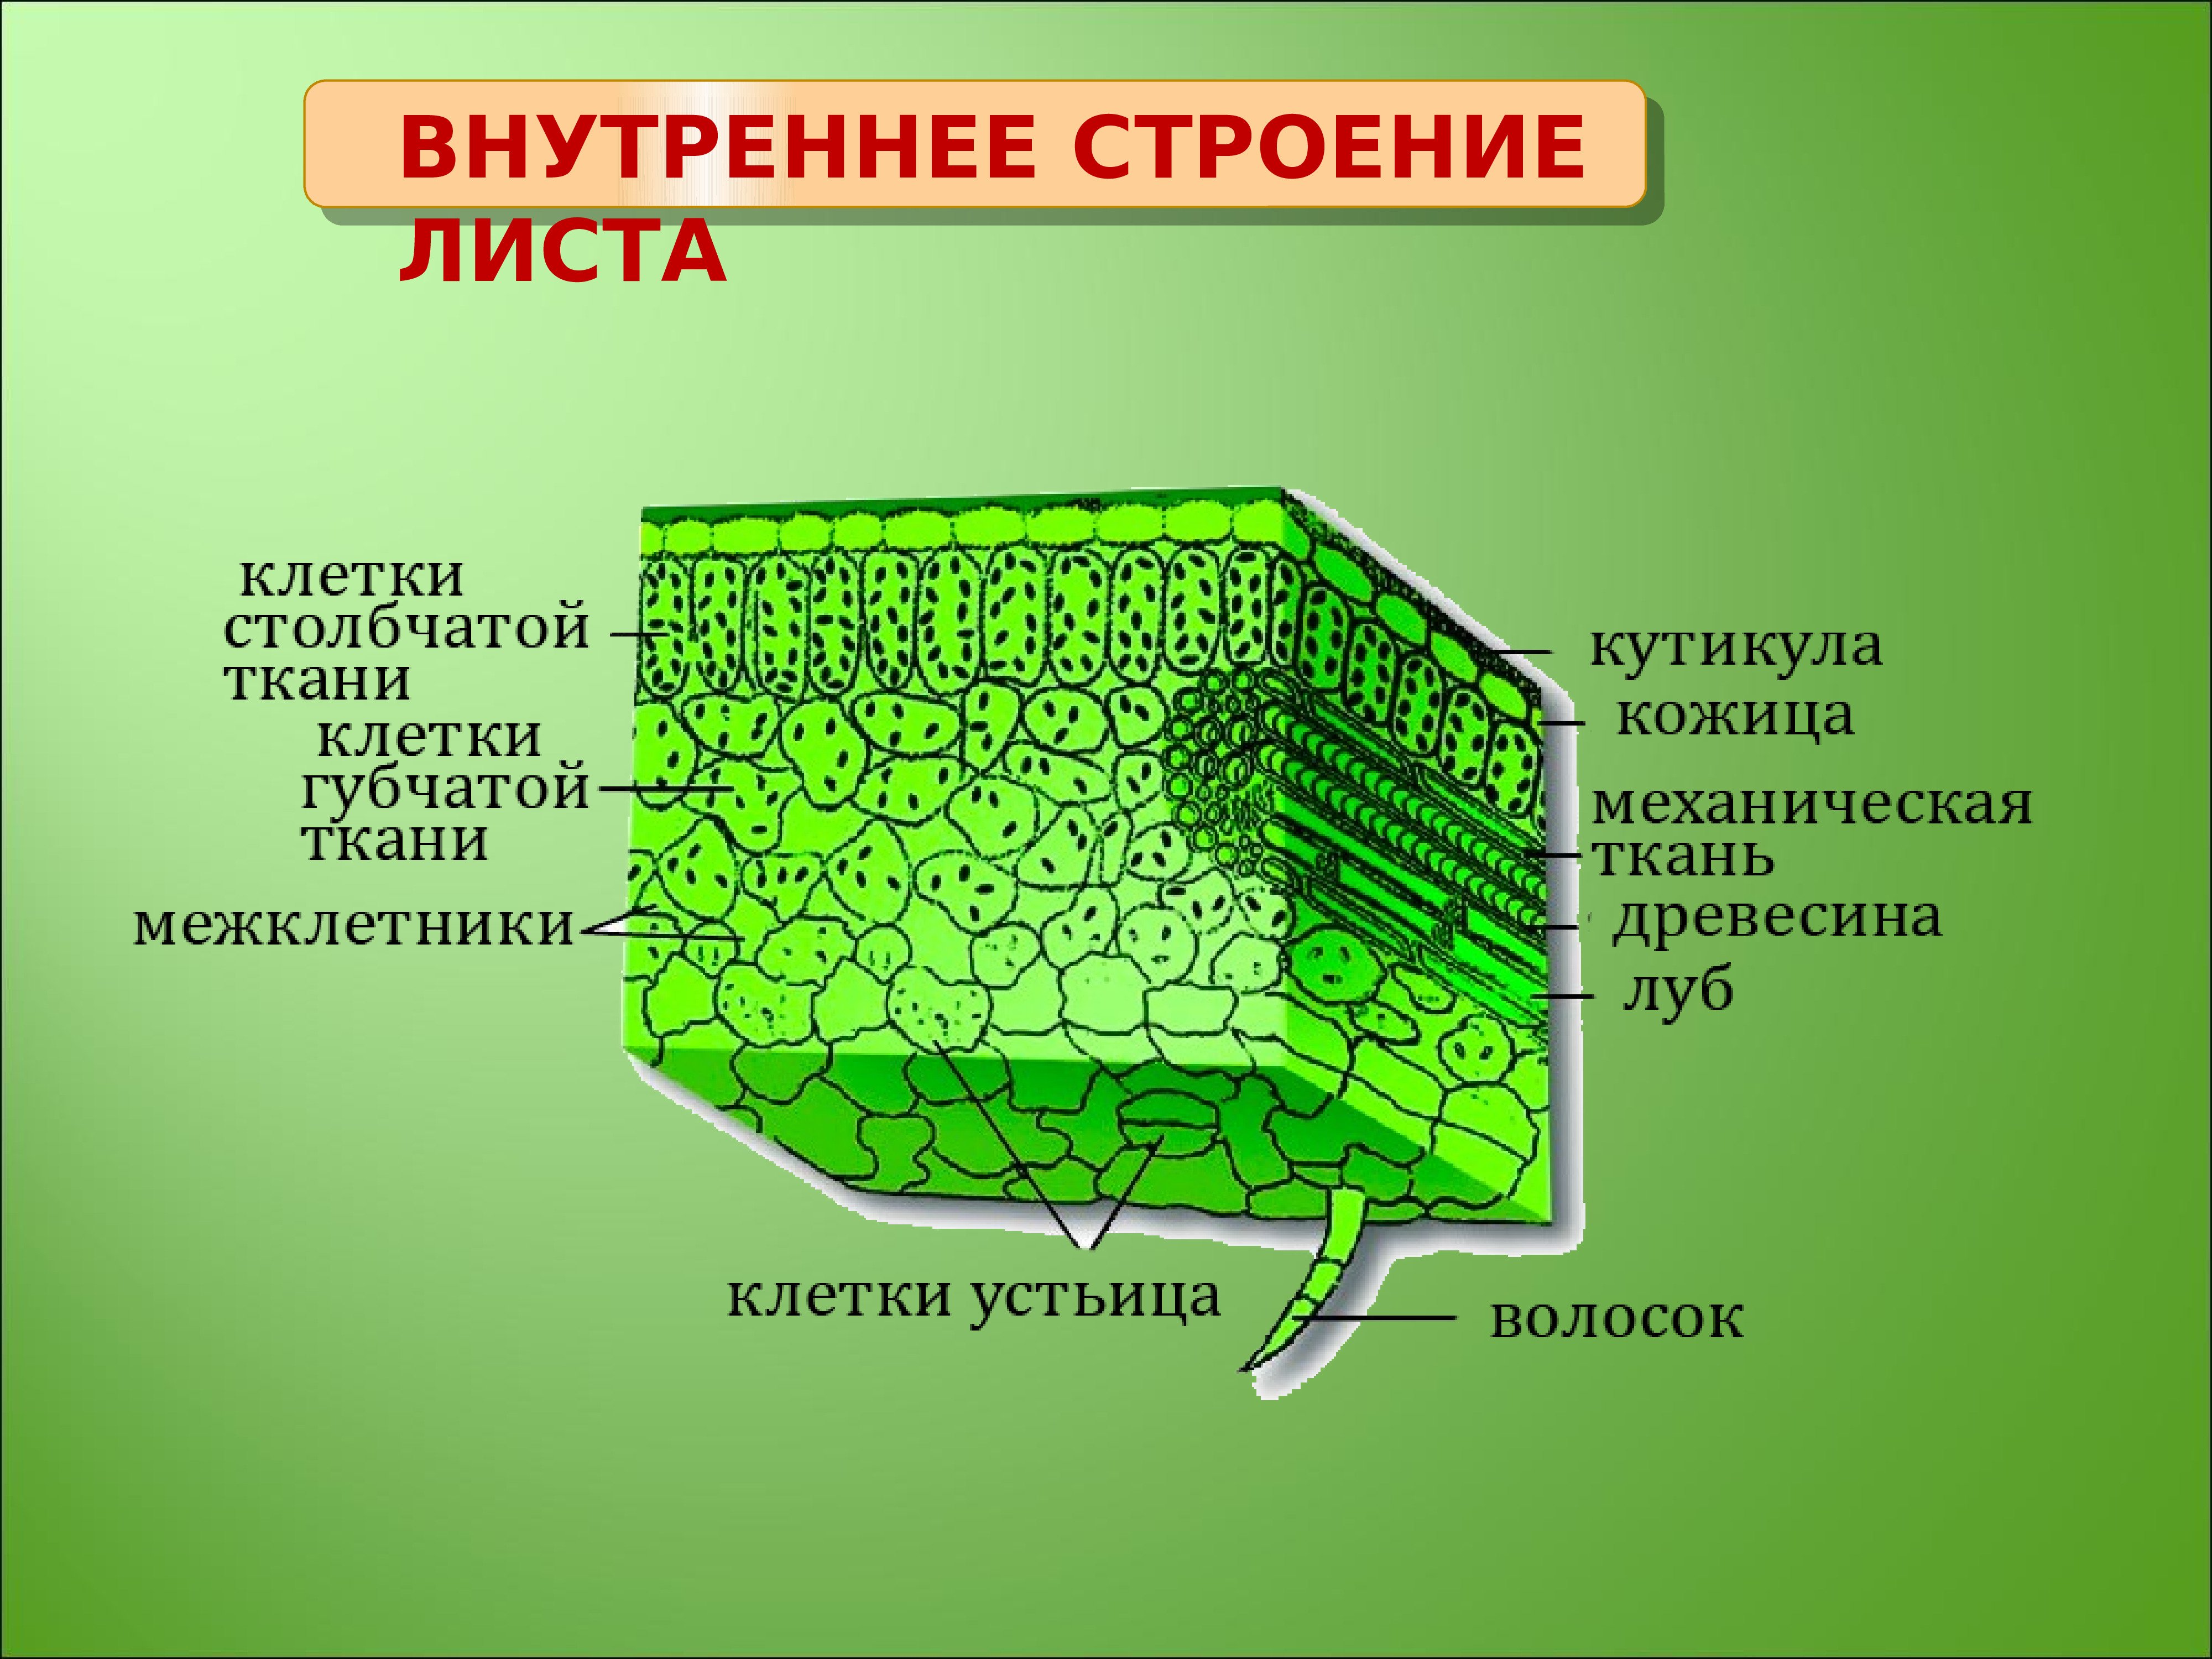 Строение структуры листа. Внутреннее строение листа ткани. Внутреннее строение листа основная ткань. Внутреннее строение листа фотосинтезирующая ткань. Основная ткань структура листа.